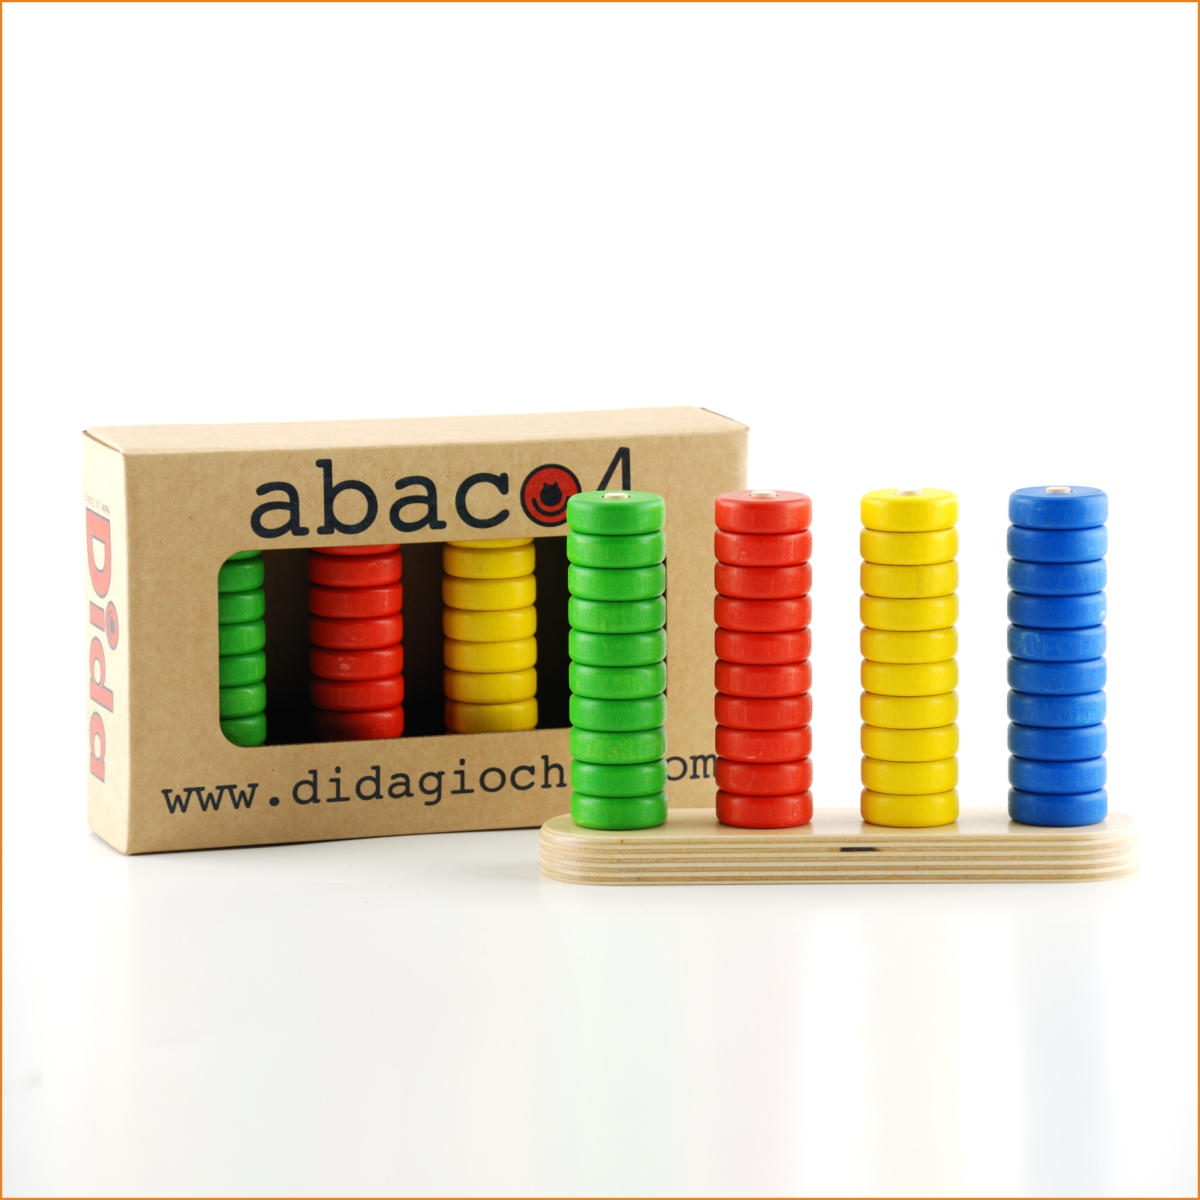 Abaco 4: un gioco didattico e di matematica per imparare a contare - Dida